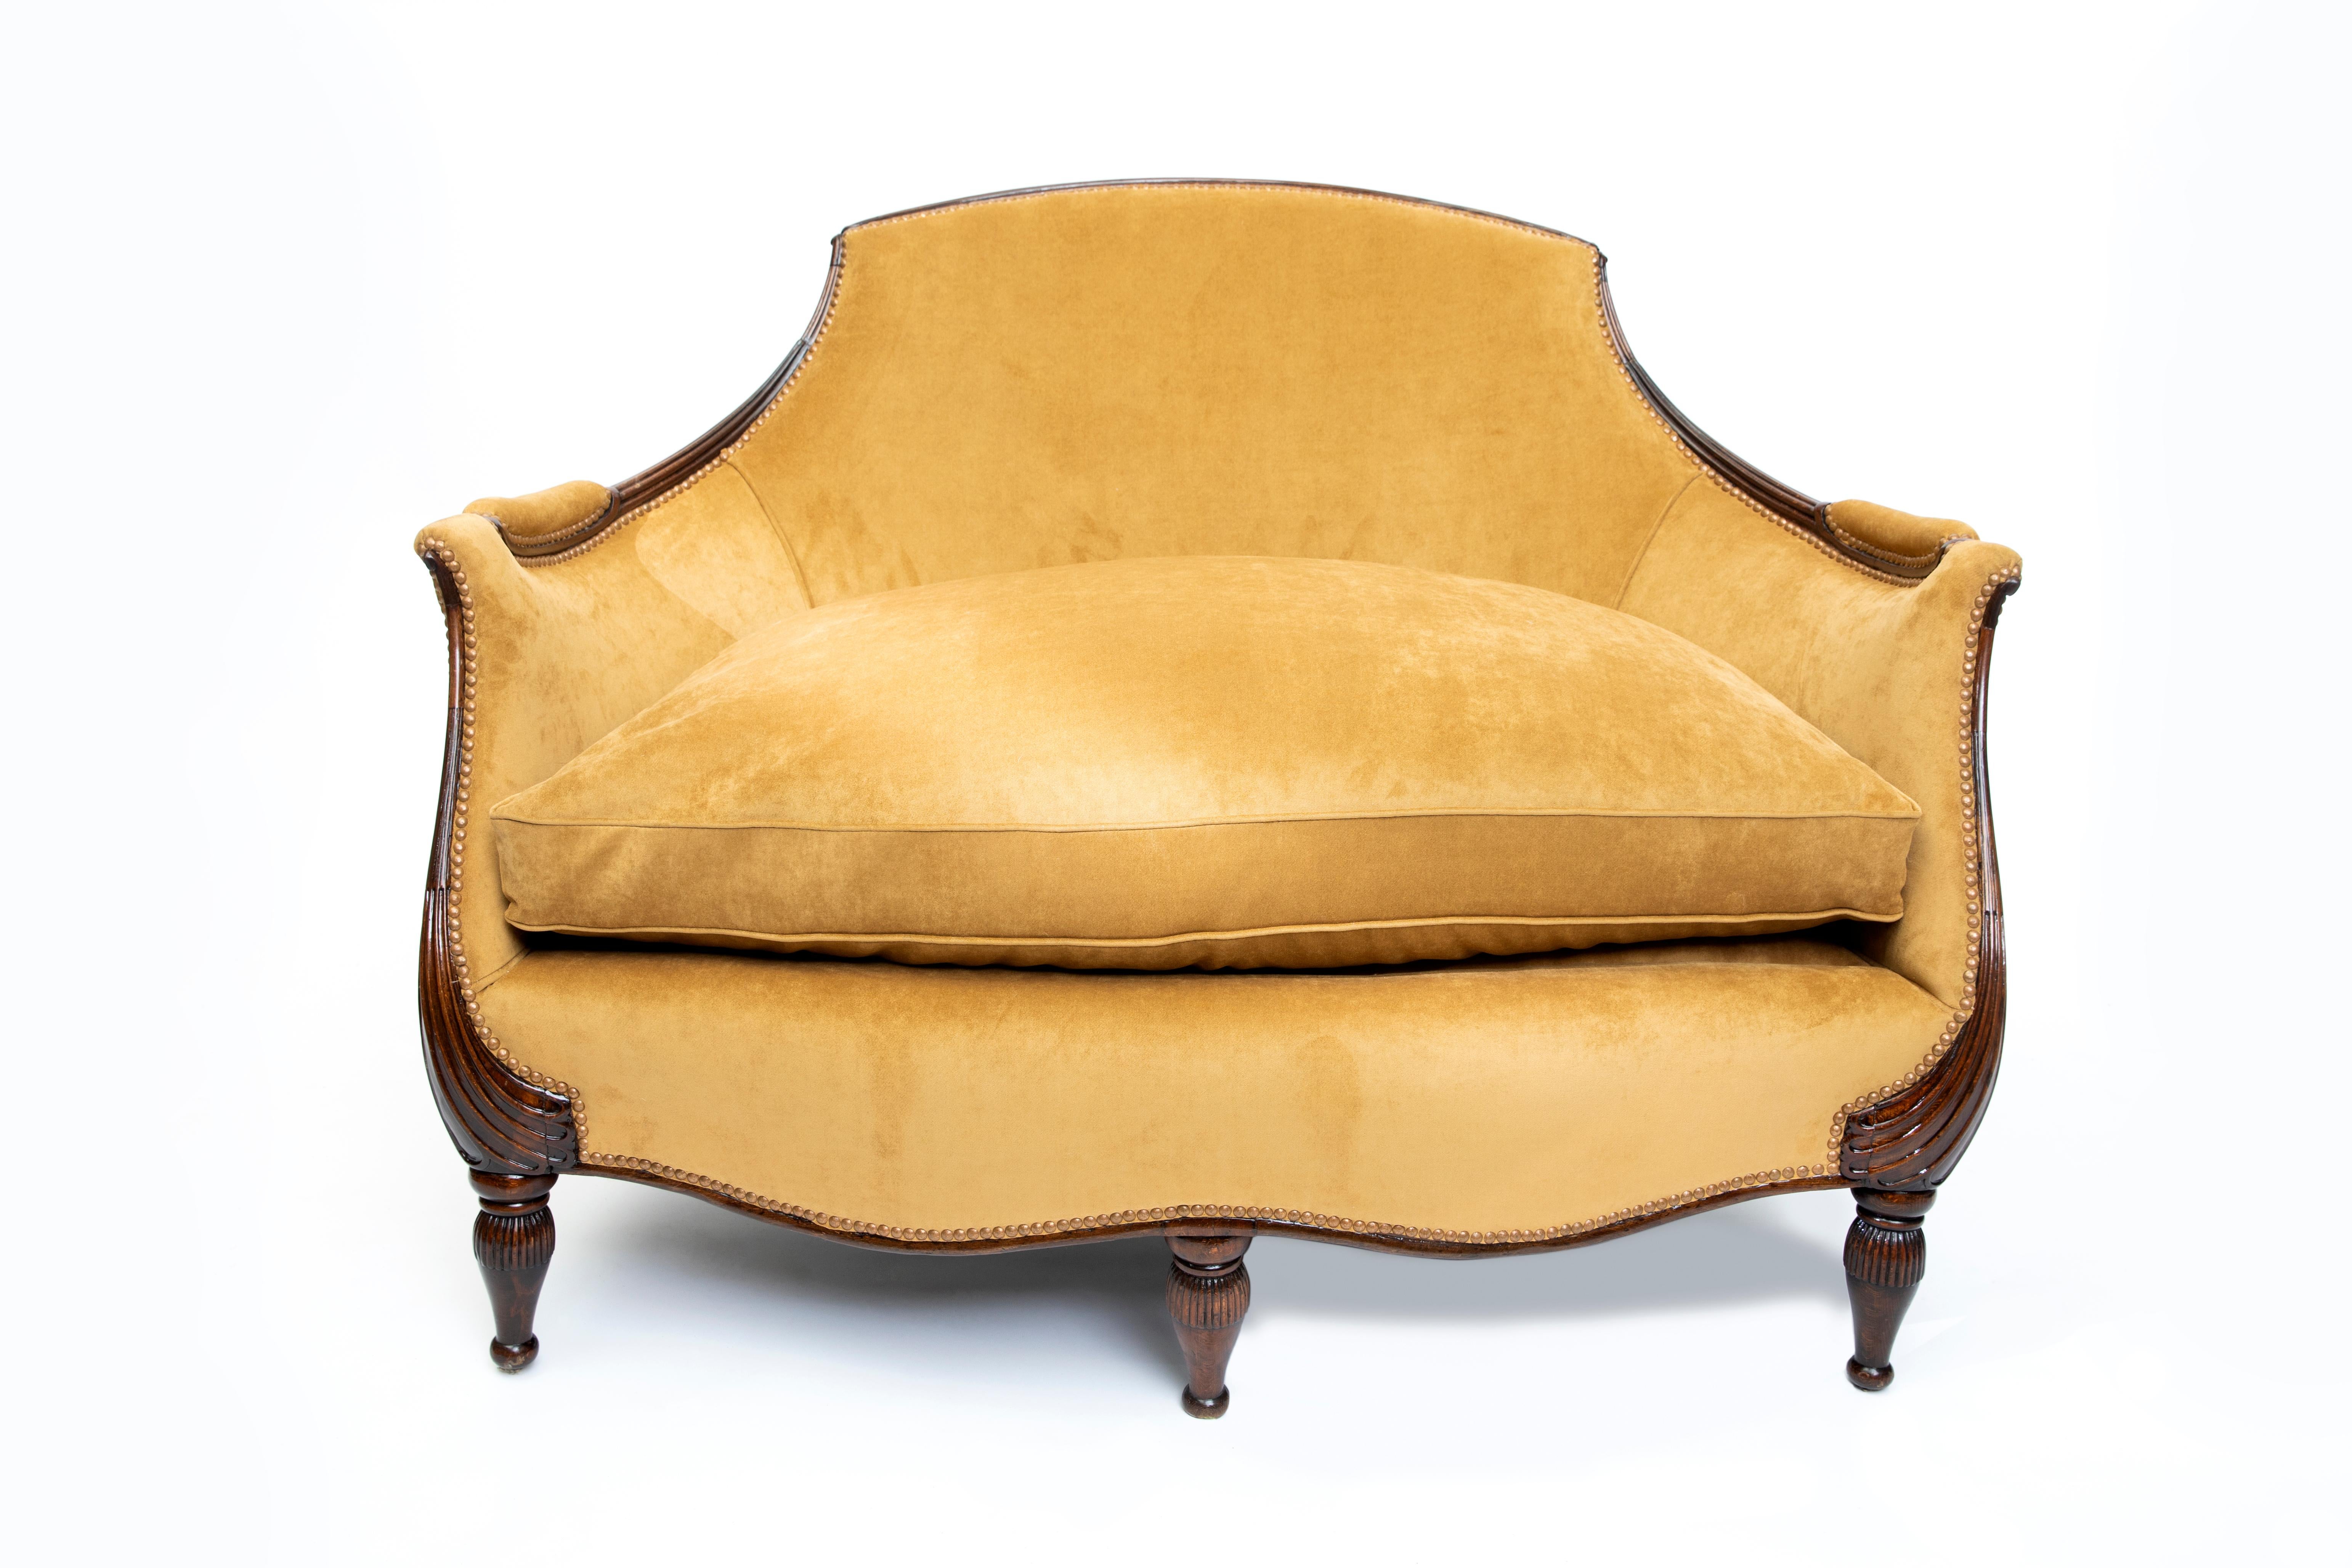 Dreiteilige Art-Déco-Garnitur aus Stoff und Holz, Francia, um 1925.
Zuschreibung an Louis Sue. 
Ein großes Sofa und zwei Sessel.

Maße des großen Sofas: höhe 90 cm, Breite 130 cm, Tiefe 90 cm, Sitzhöhe 55 cm.
Maße des Sesselpaars: höhe 90 cm,